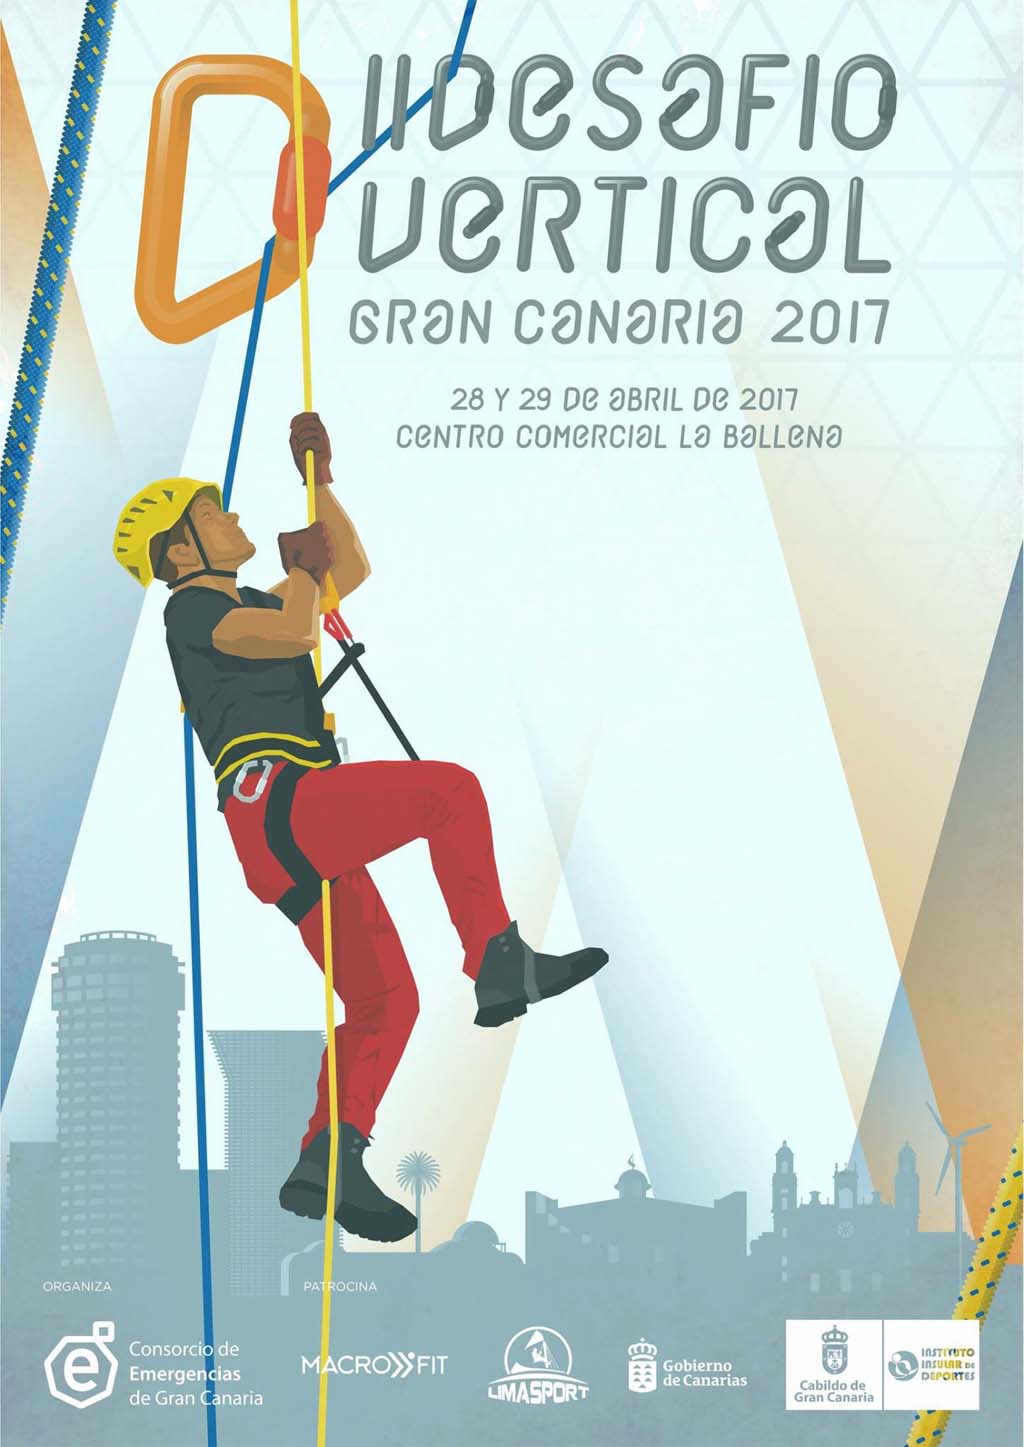 10 equipos competirán en el II Desafío Vertical Gran Canaria, el 28 y 29 de abril, organizado por @emergencias_gc